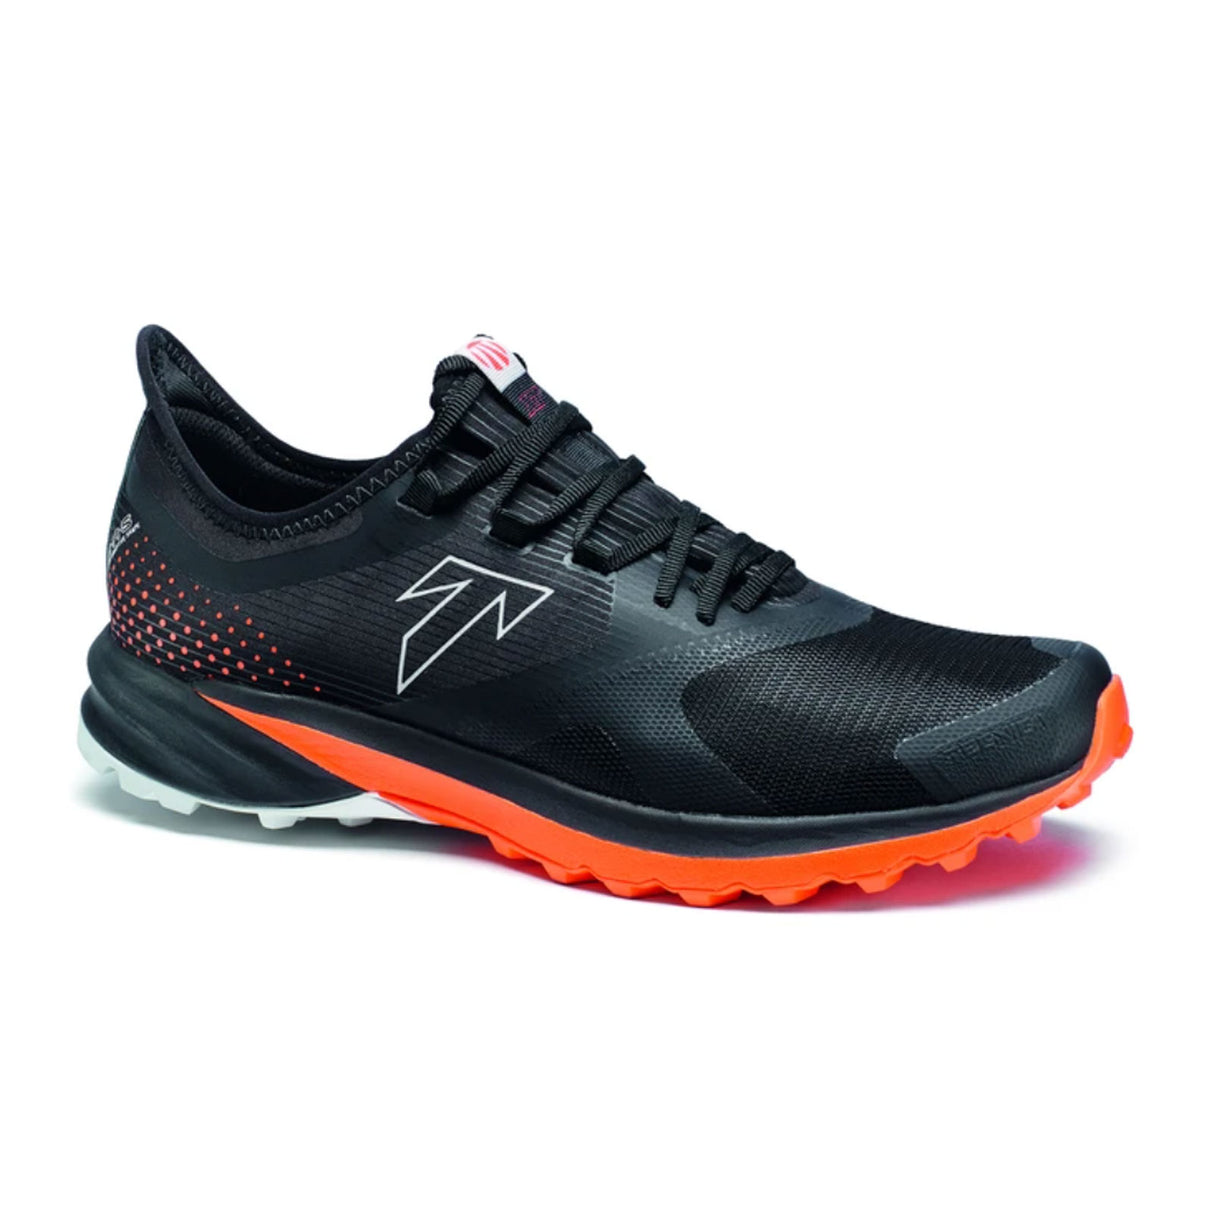 Tecnica Origin XT Low Hiking Shoe (Men) - Black/Dusty Lava Hiking - Low - The Heel Shoe Fitters